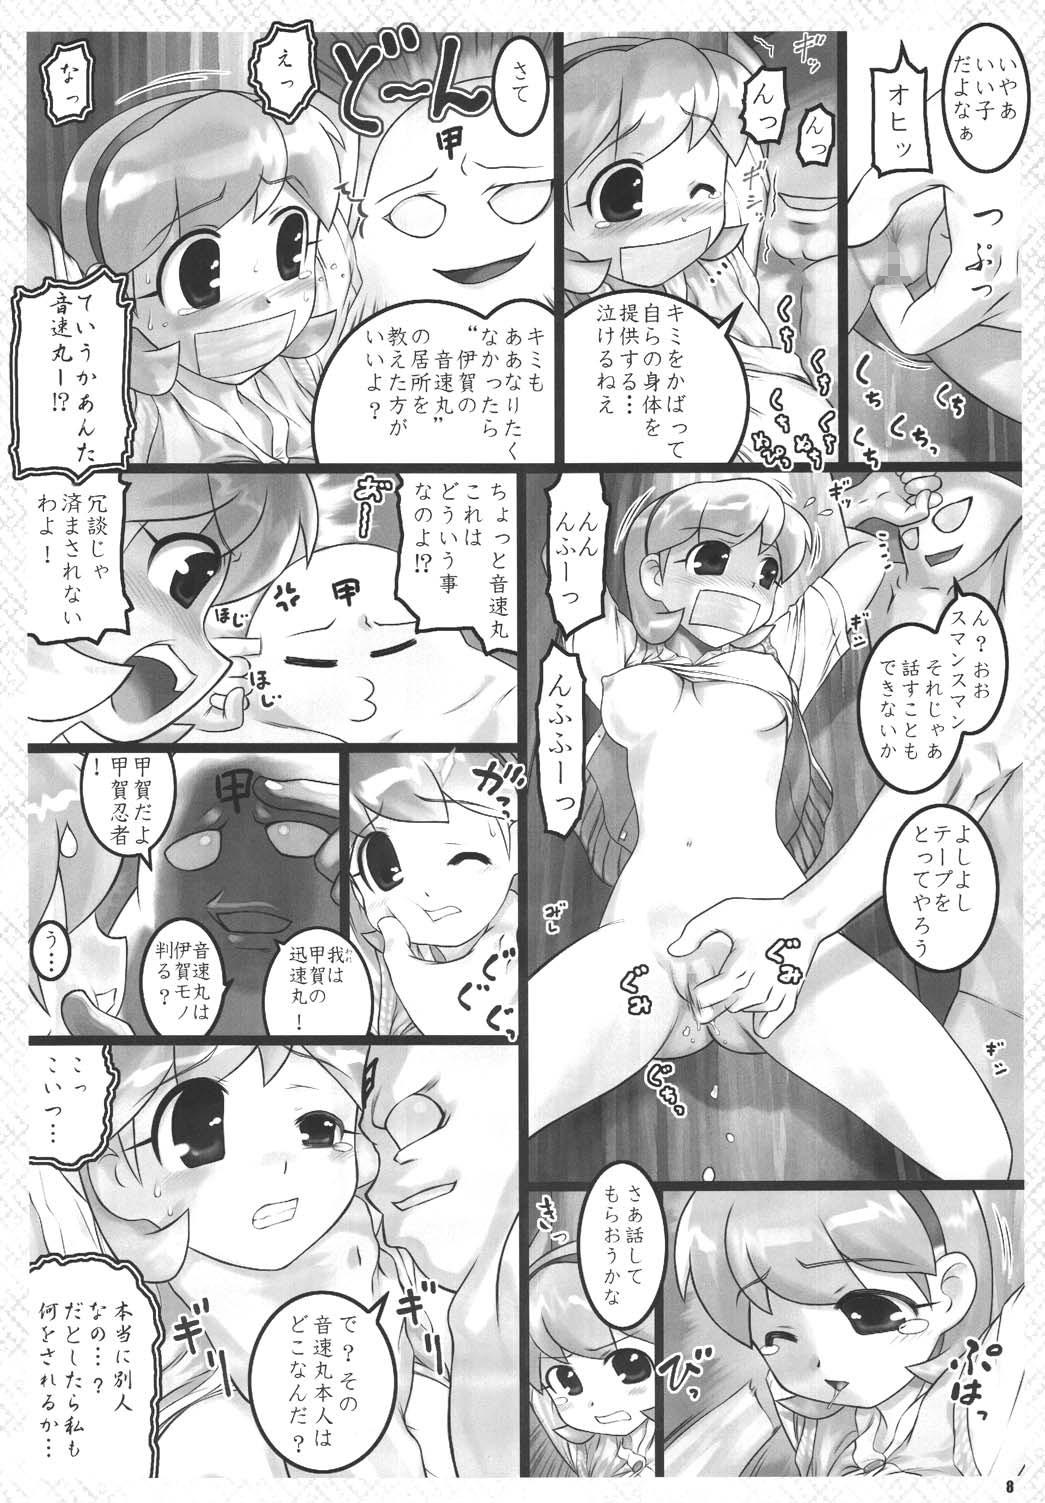 Babe Kunoichi Ninpouchou - 2x2 shinobuden Tit - Page 8